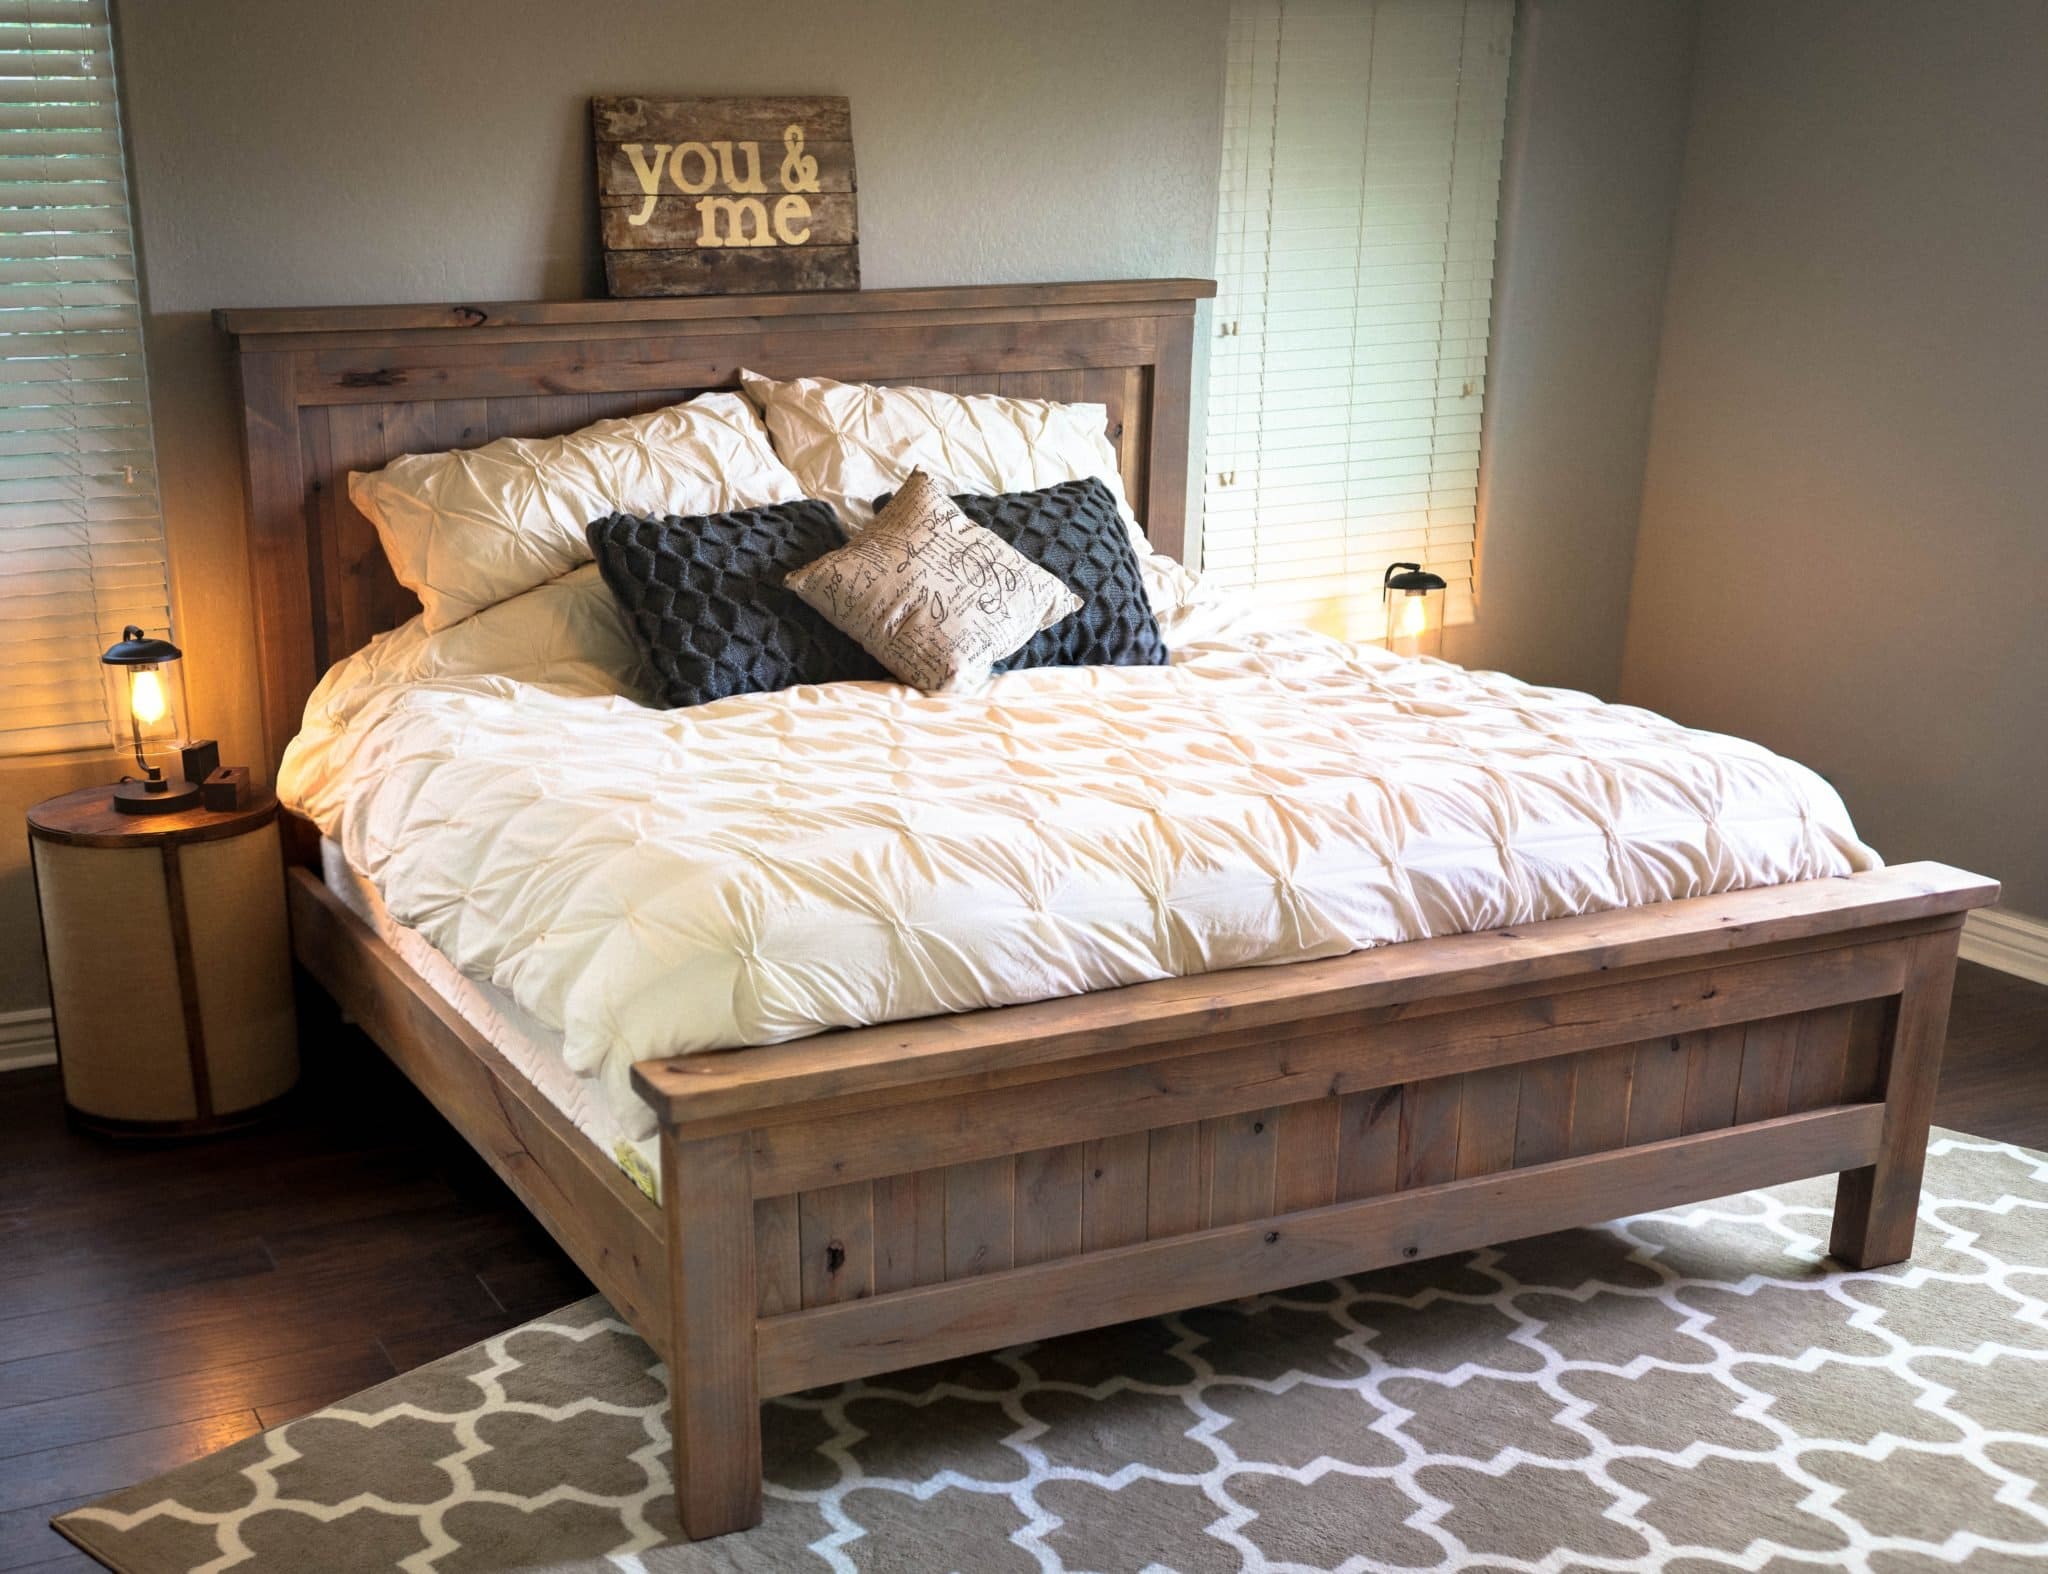 деревянная кровать в интерьере